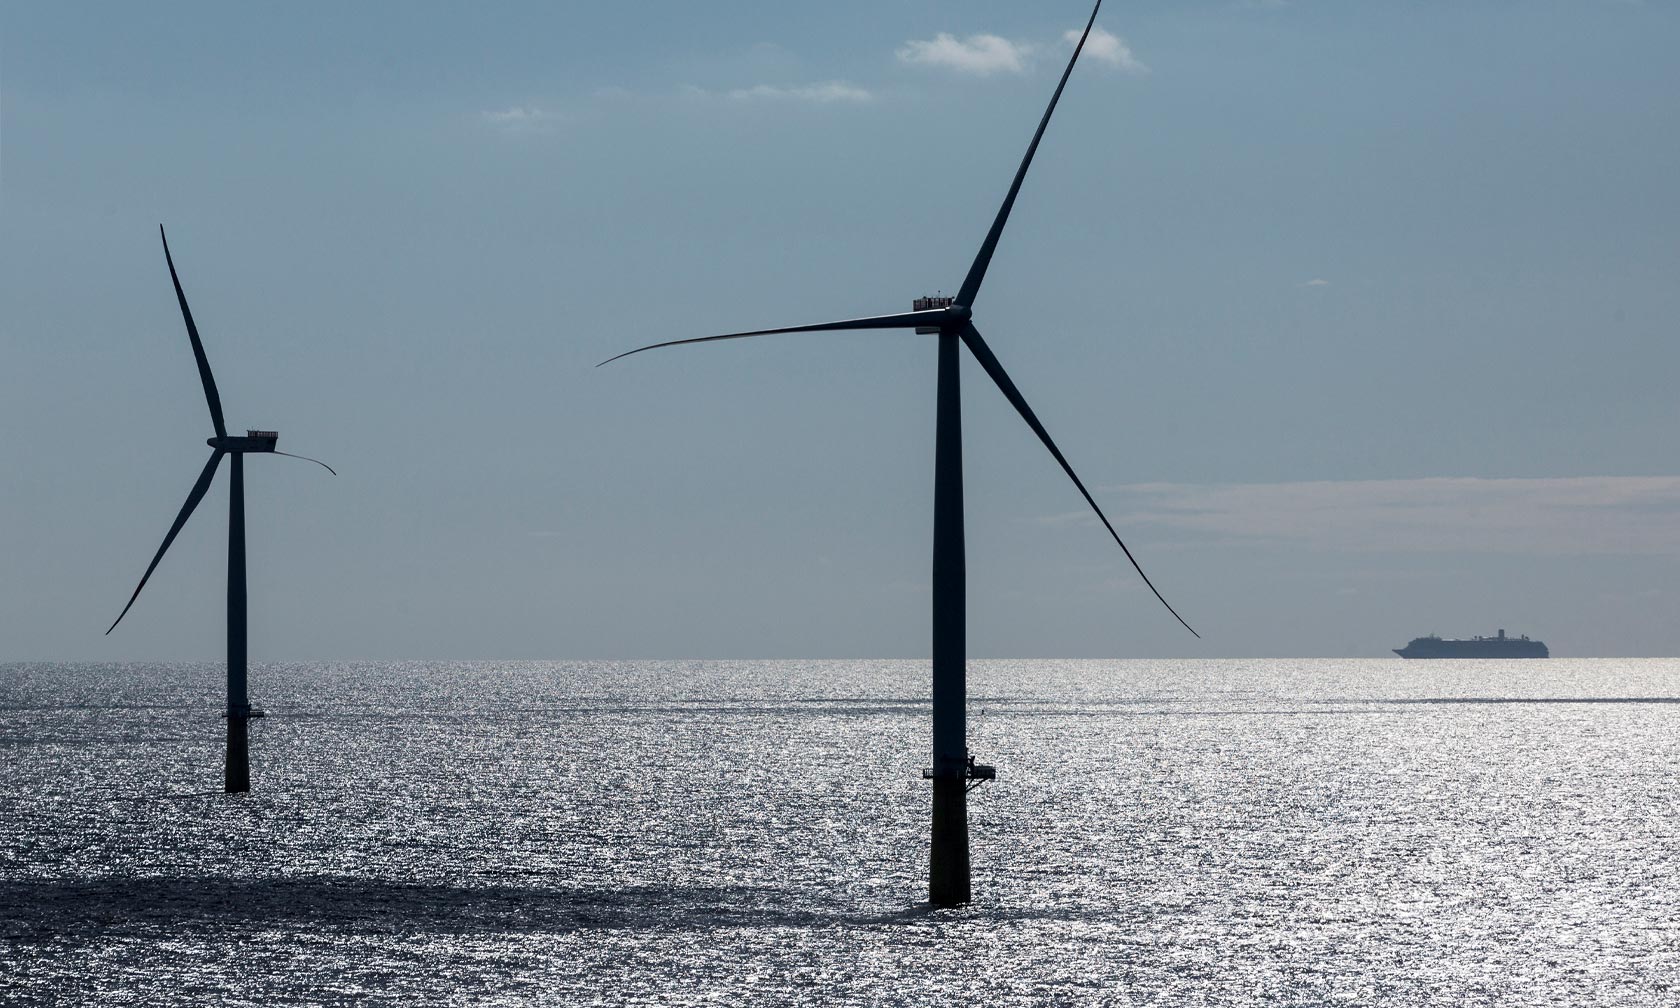 Two wind turbines at Vattenfall's offshore wind farm DanTysk